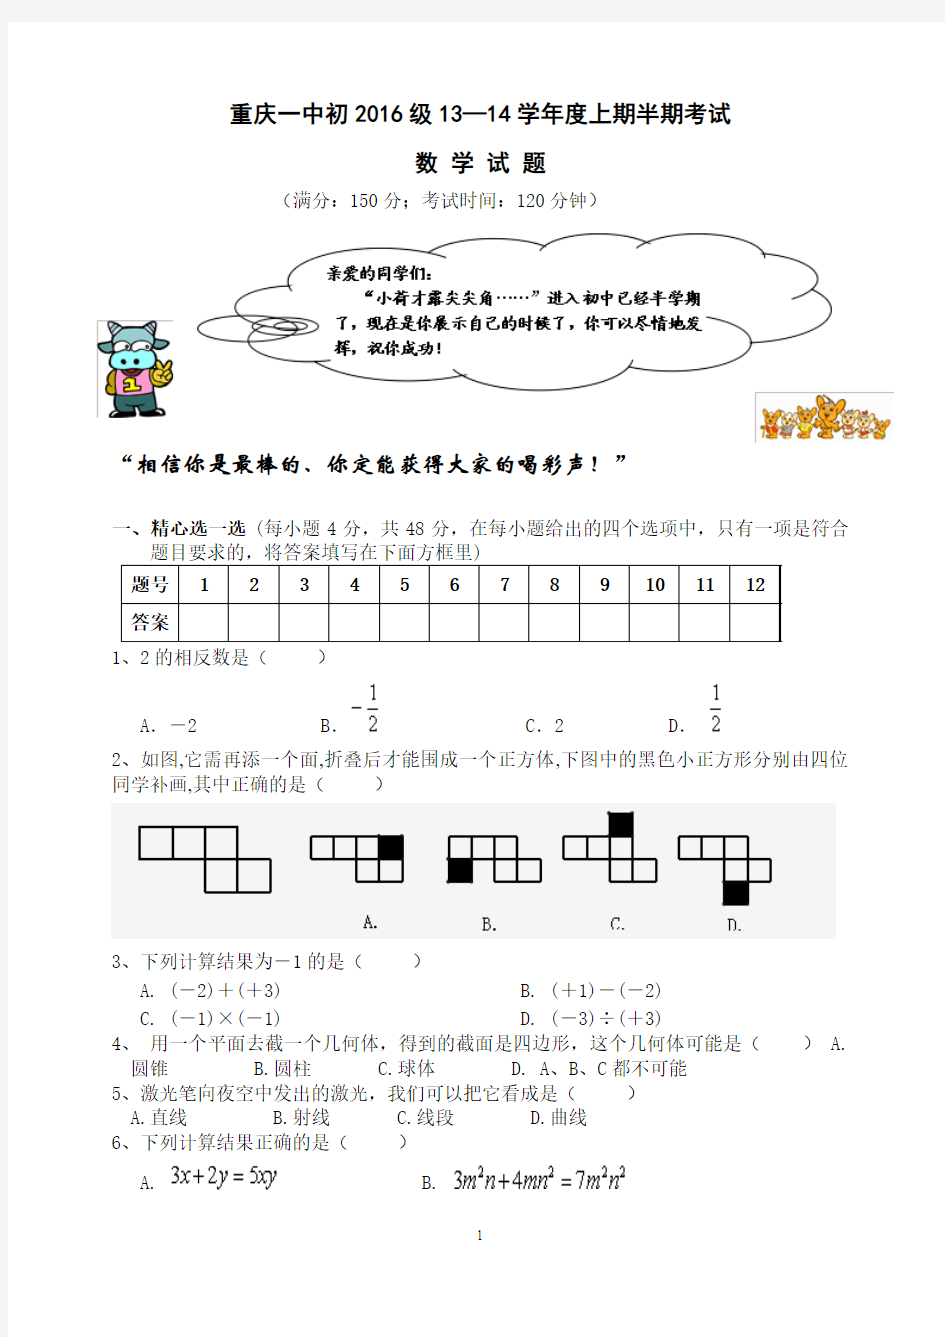 重庆一中初2016级13-14学年(上)半期试题——数学